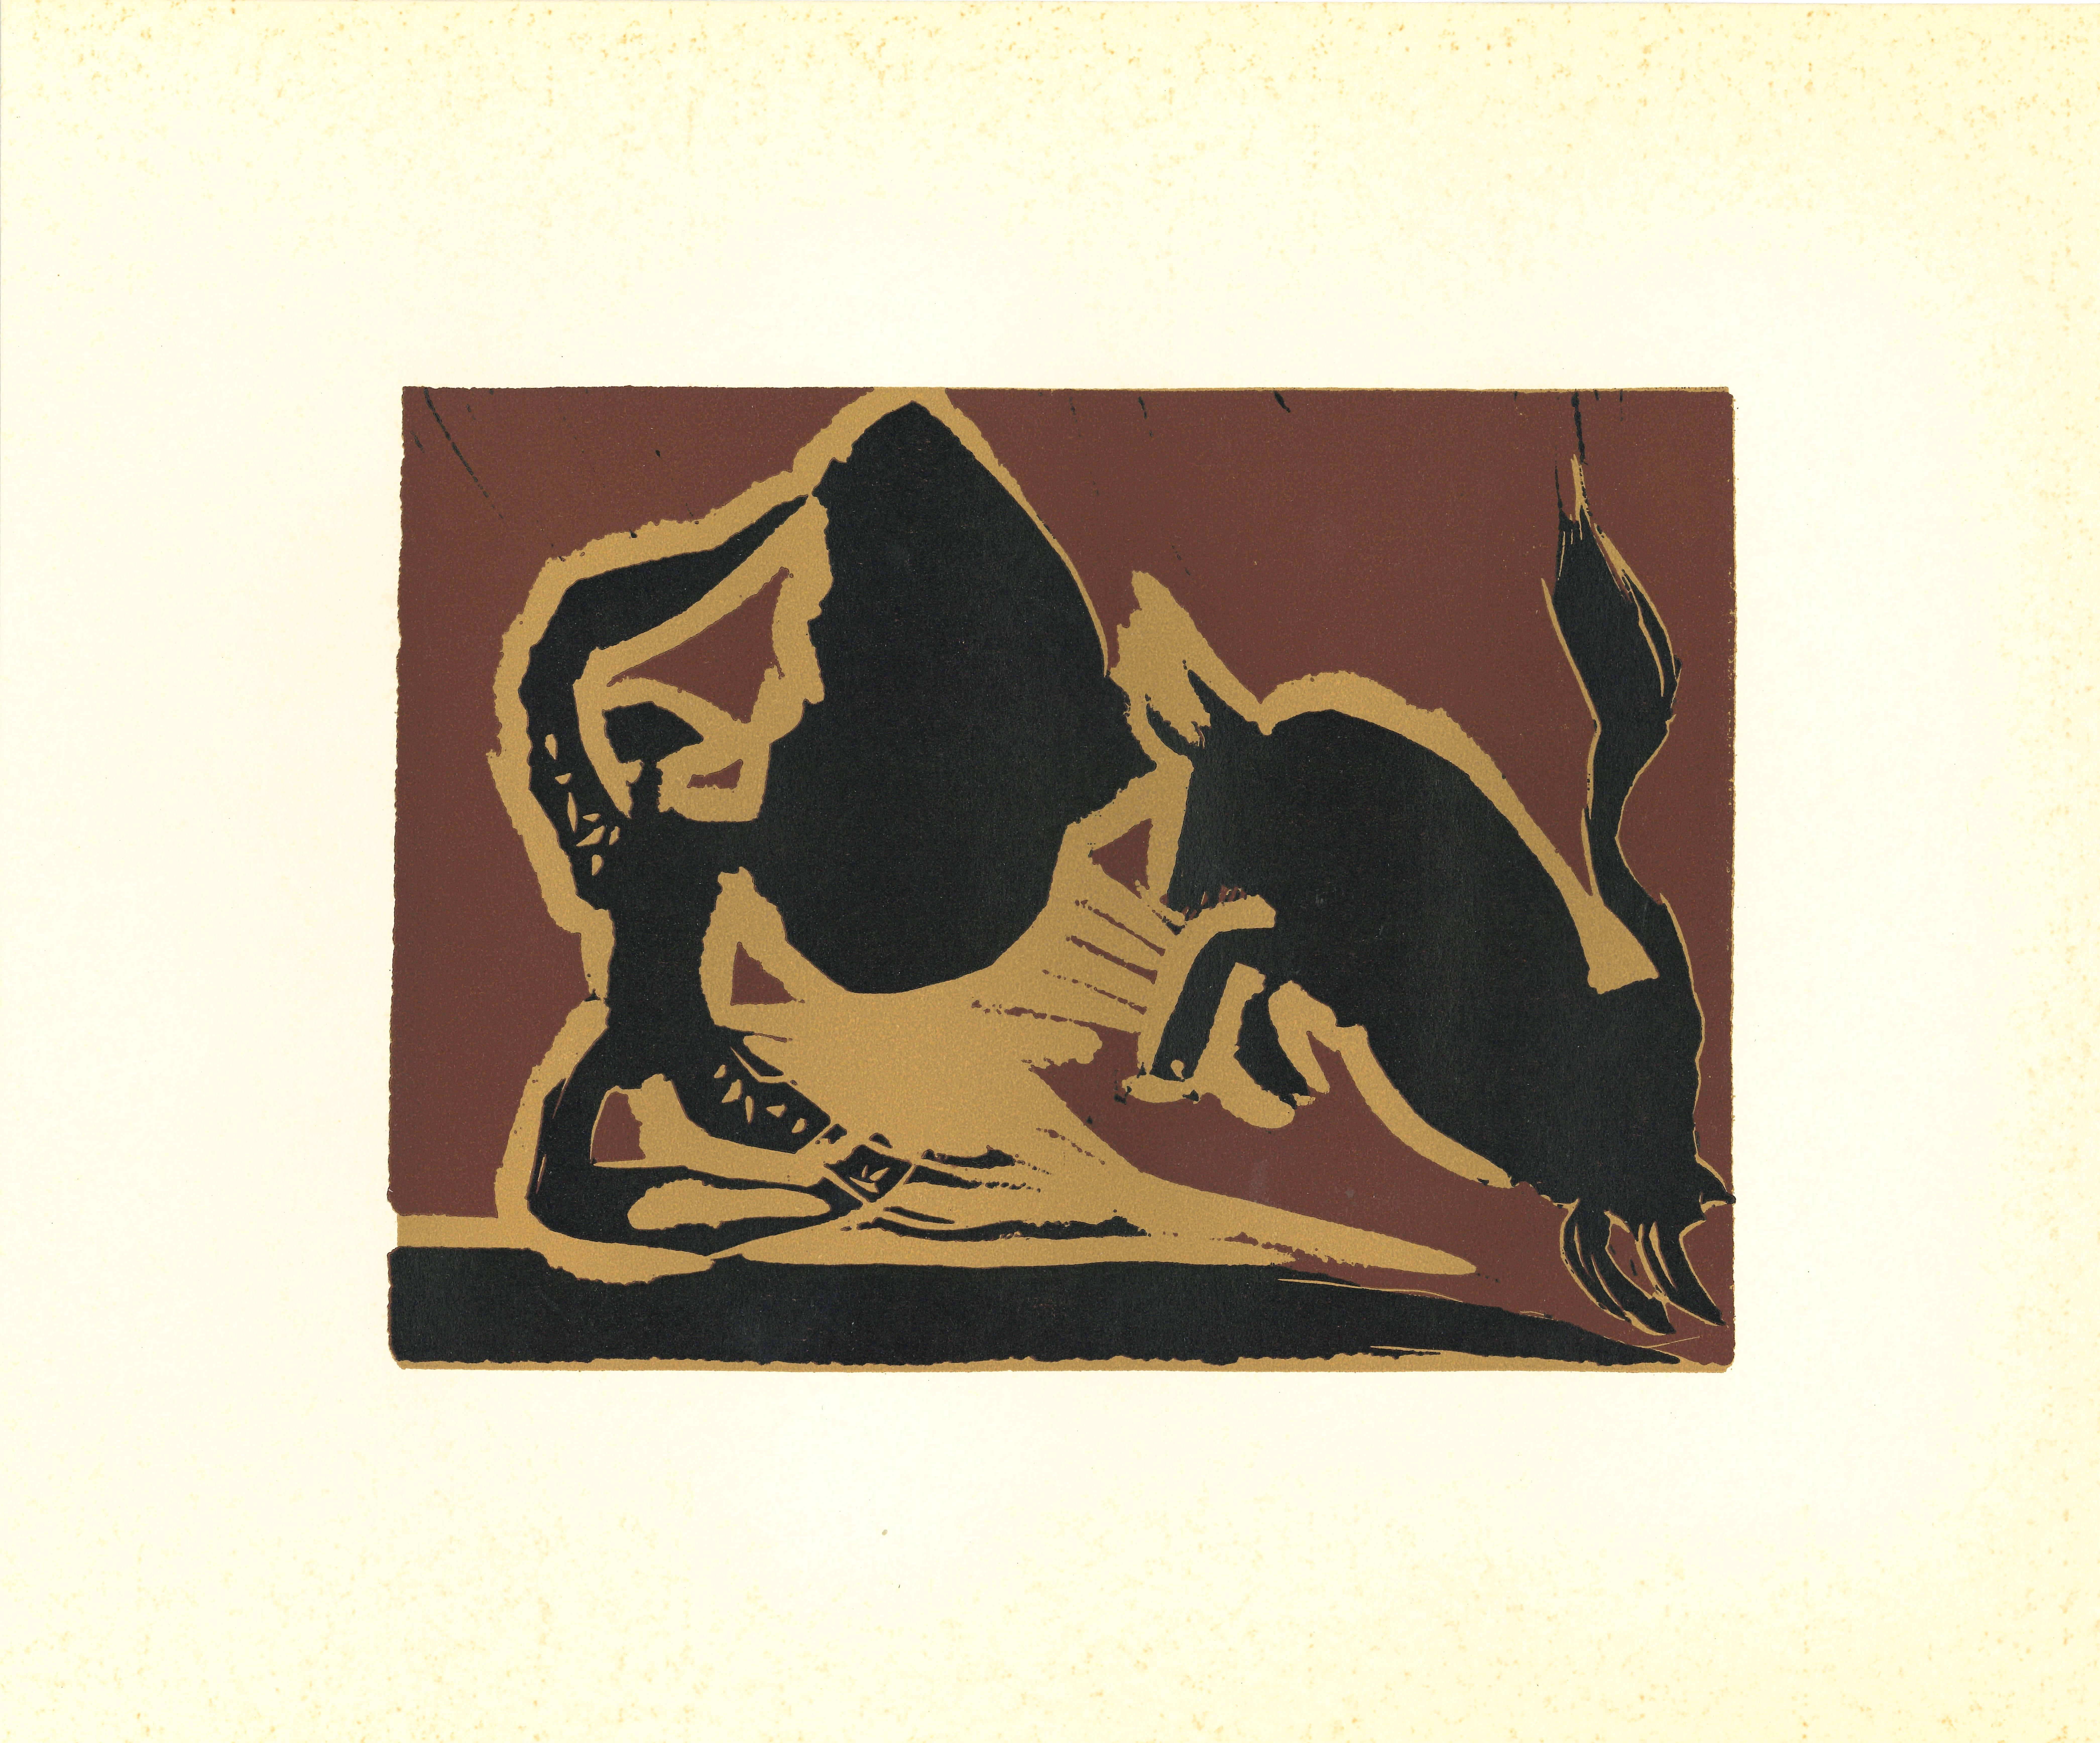 Farol – Linolschnitt nach Pablo Picasso – 1962 (Kubismus), Print, von (after) Pablo Picasso